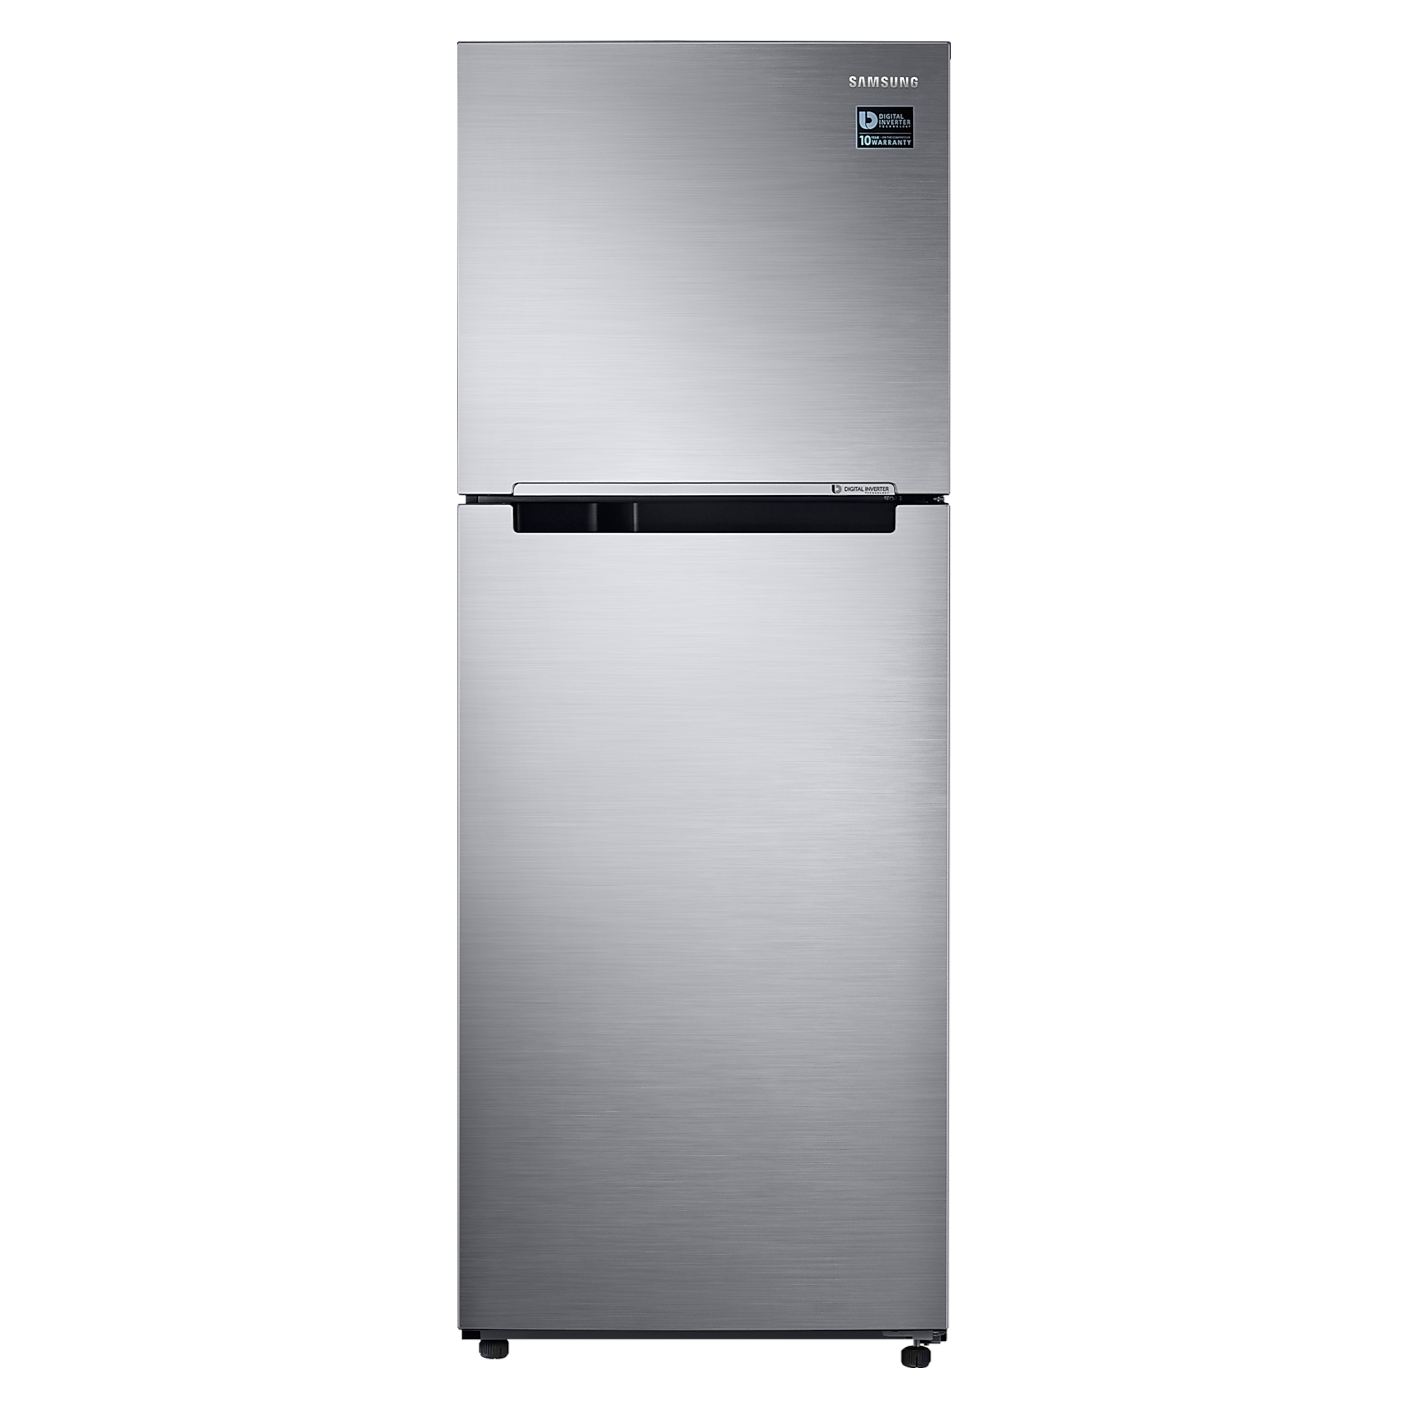 Refrigerador LG 11pies gris - Multimax Store